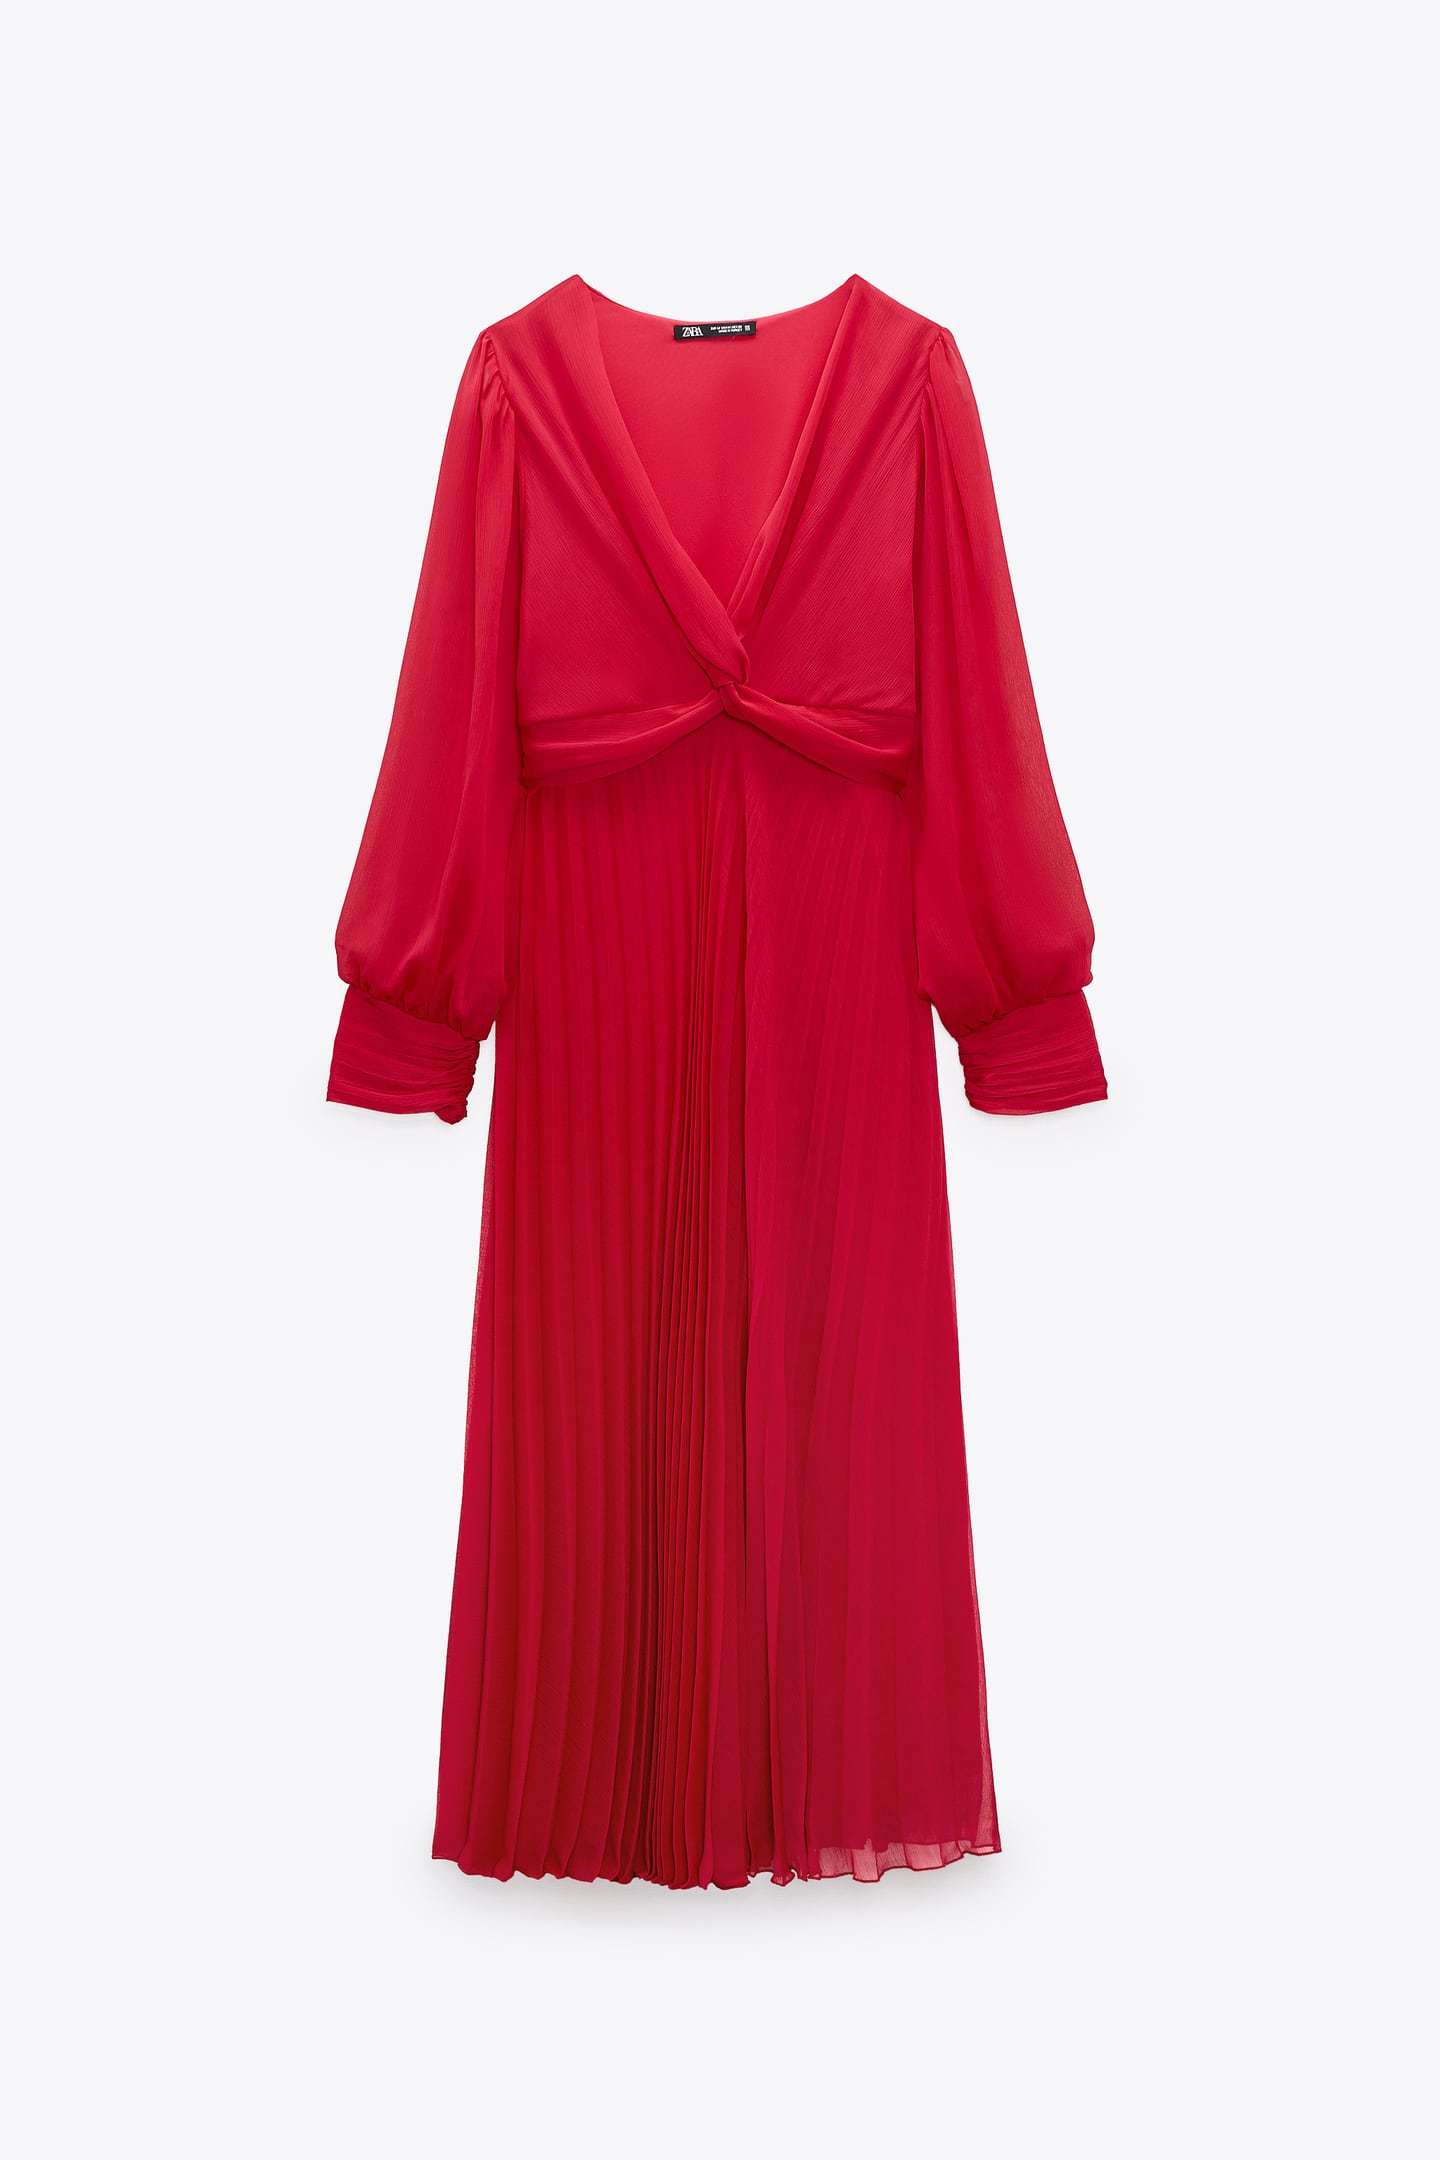 ALT: Estos son los 10 vestidos midi de Zara ms elegantes de las rebajas de enero 2023